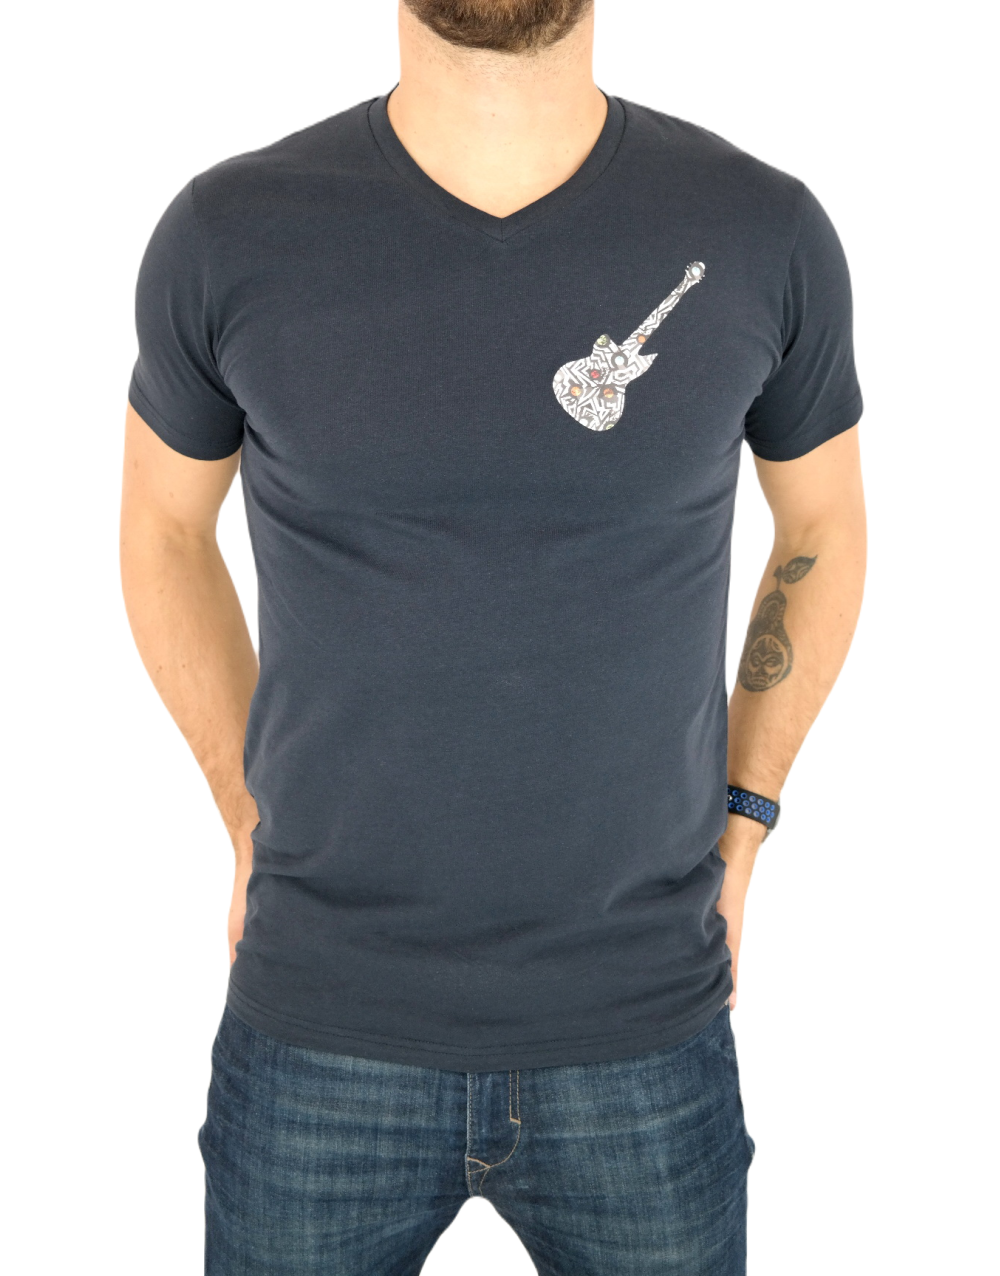 GIOVANNI PERA T-shirt męski granatowy TGP76 w szpic, serek , gritara, elastan